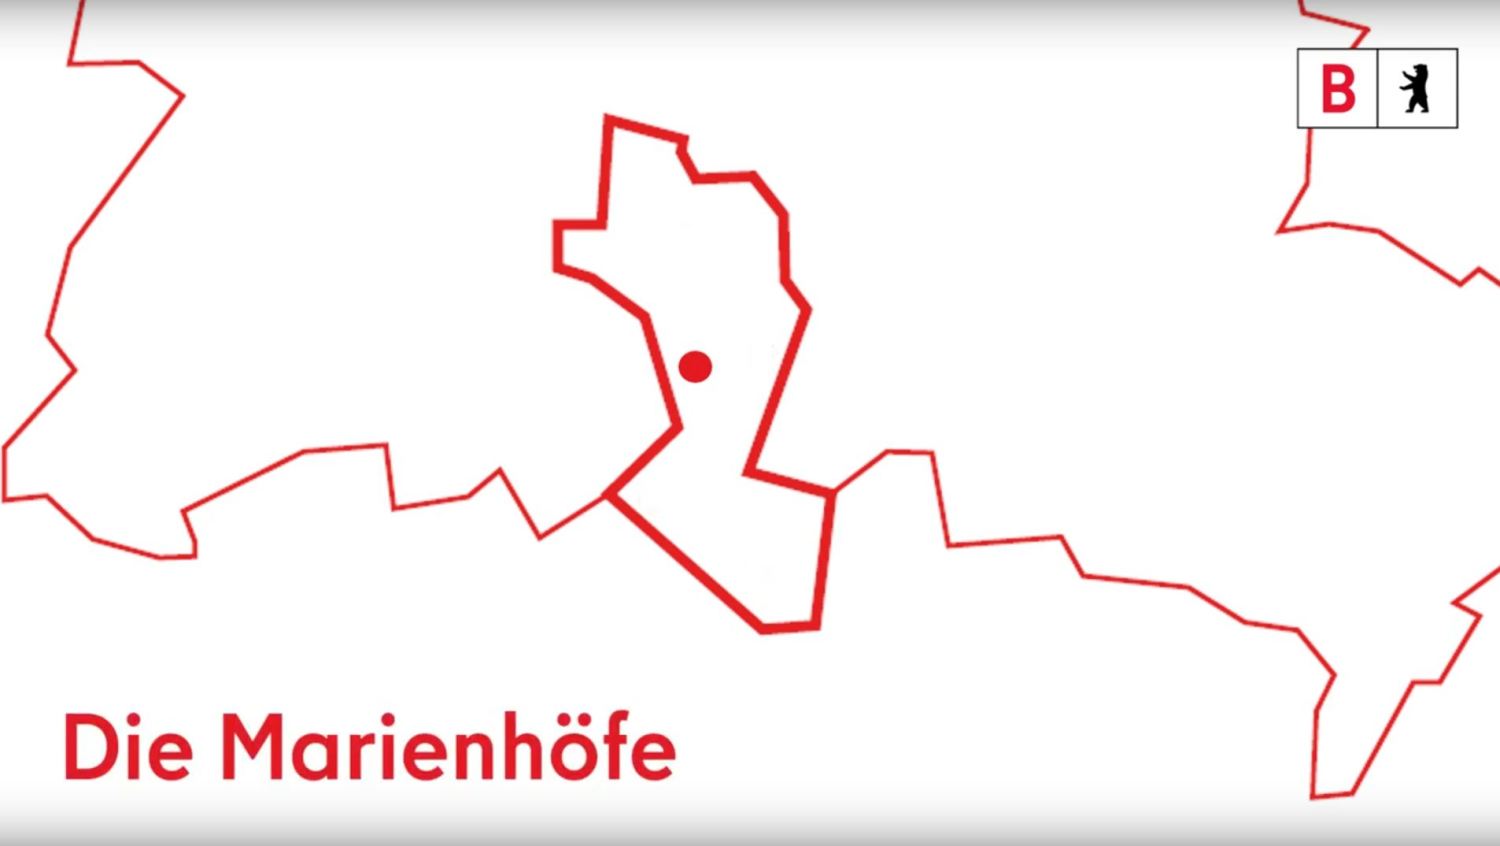 Umriss der Stadt Berlin mit einer Markierung und dem Text "Die Marienhöfe"